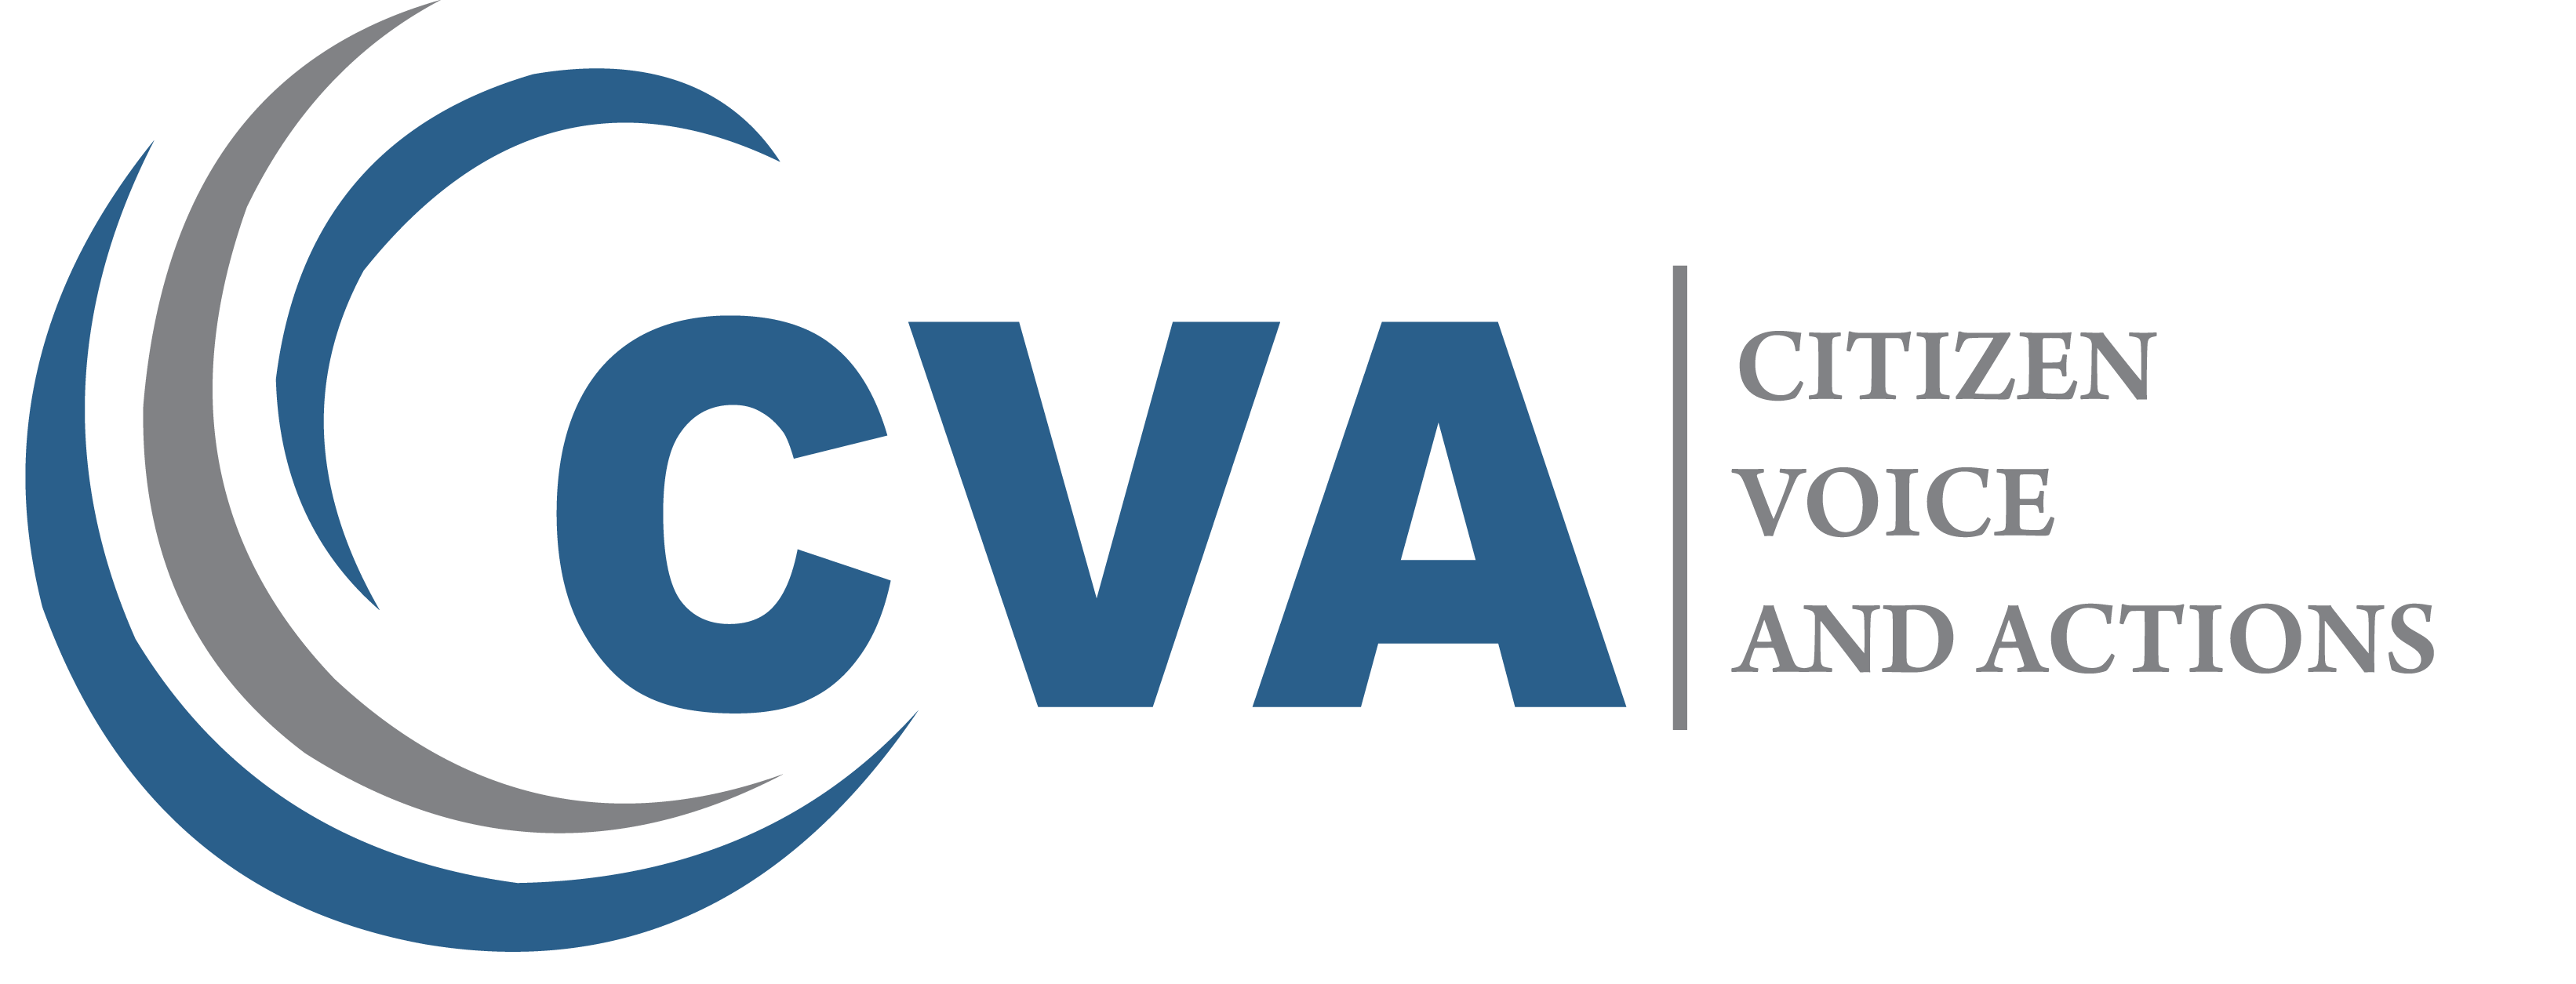 CVA Official Website